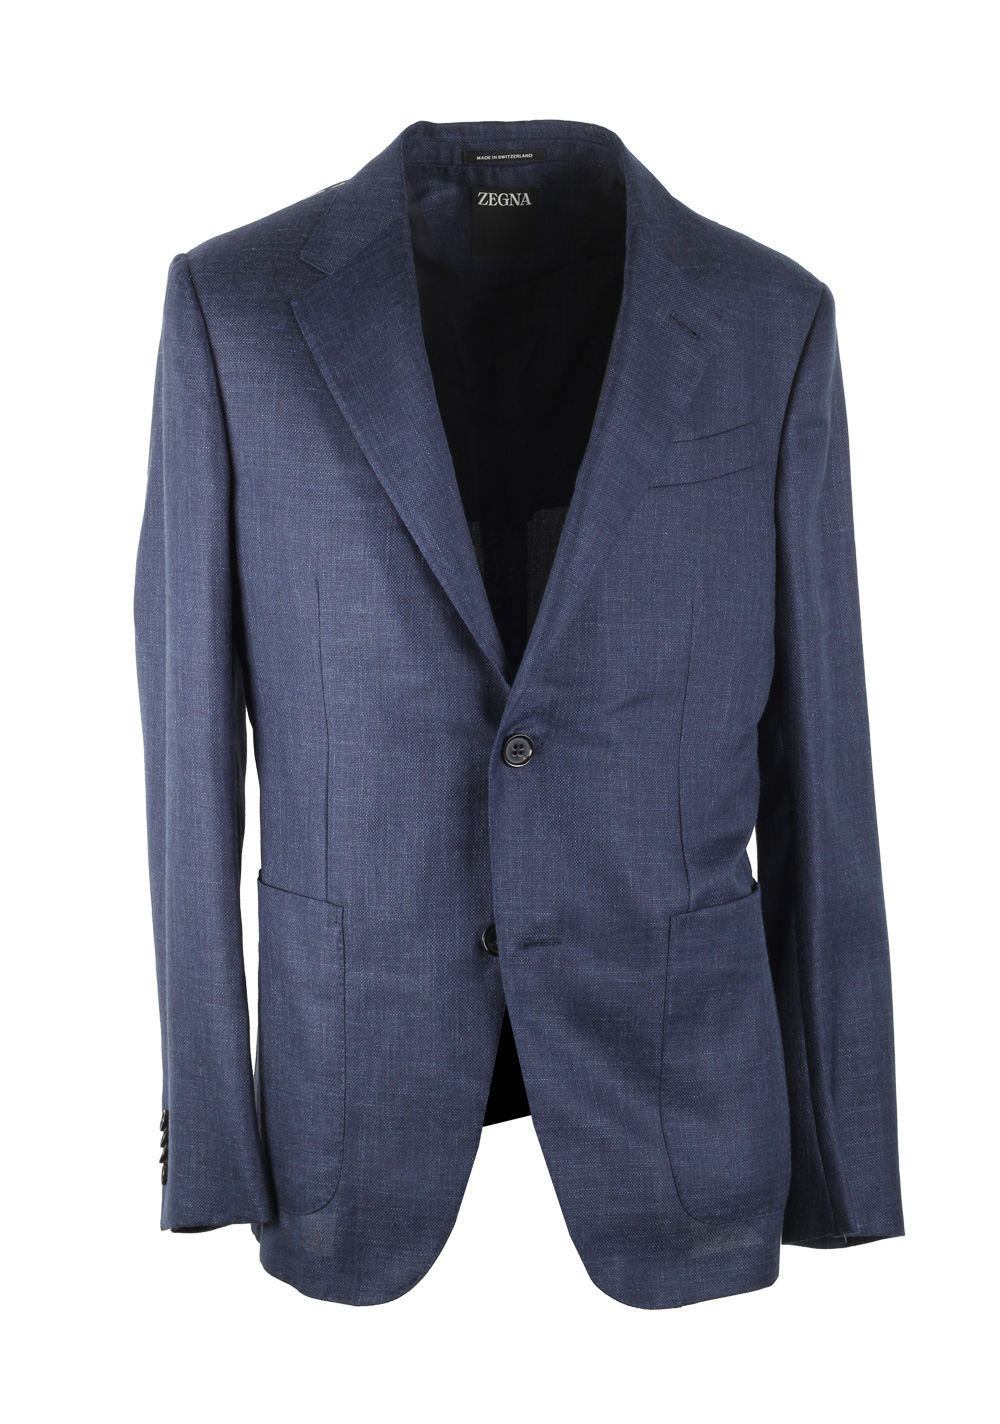 ZEGNA Natural Blue Sport Coat Size 48 / 38R U.S. | Costume Limité